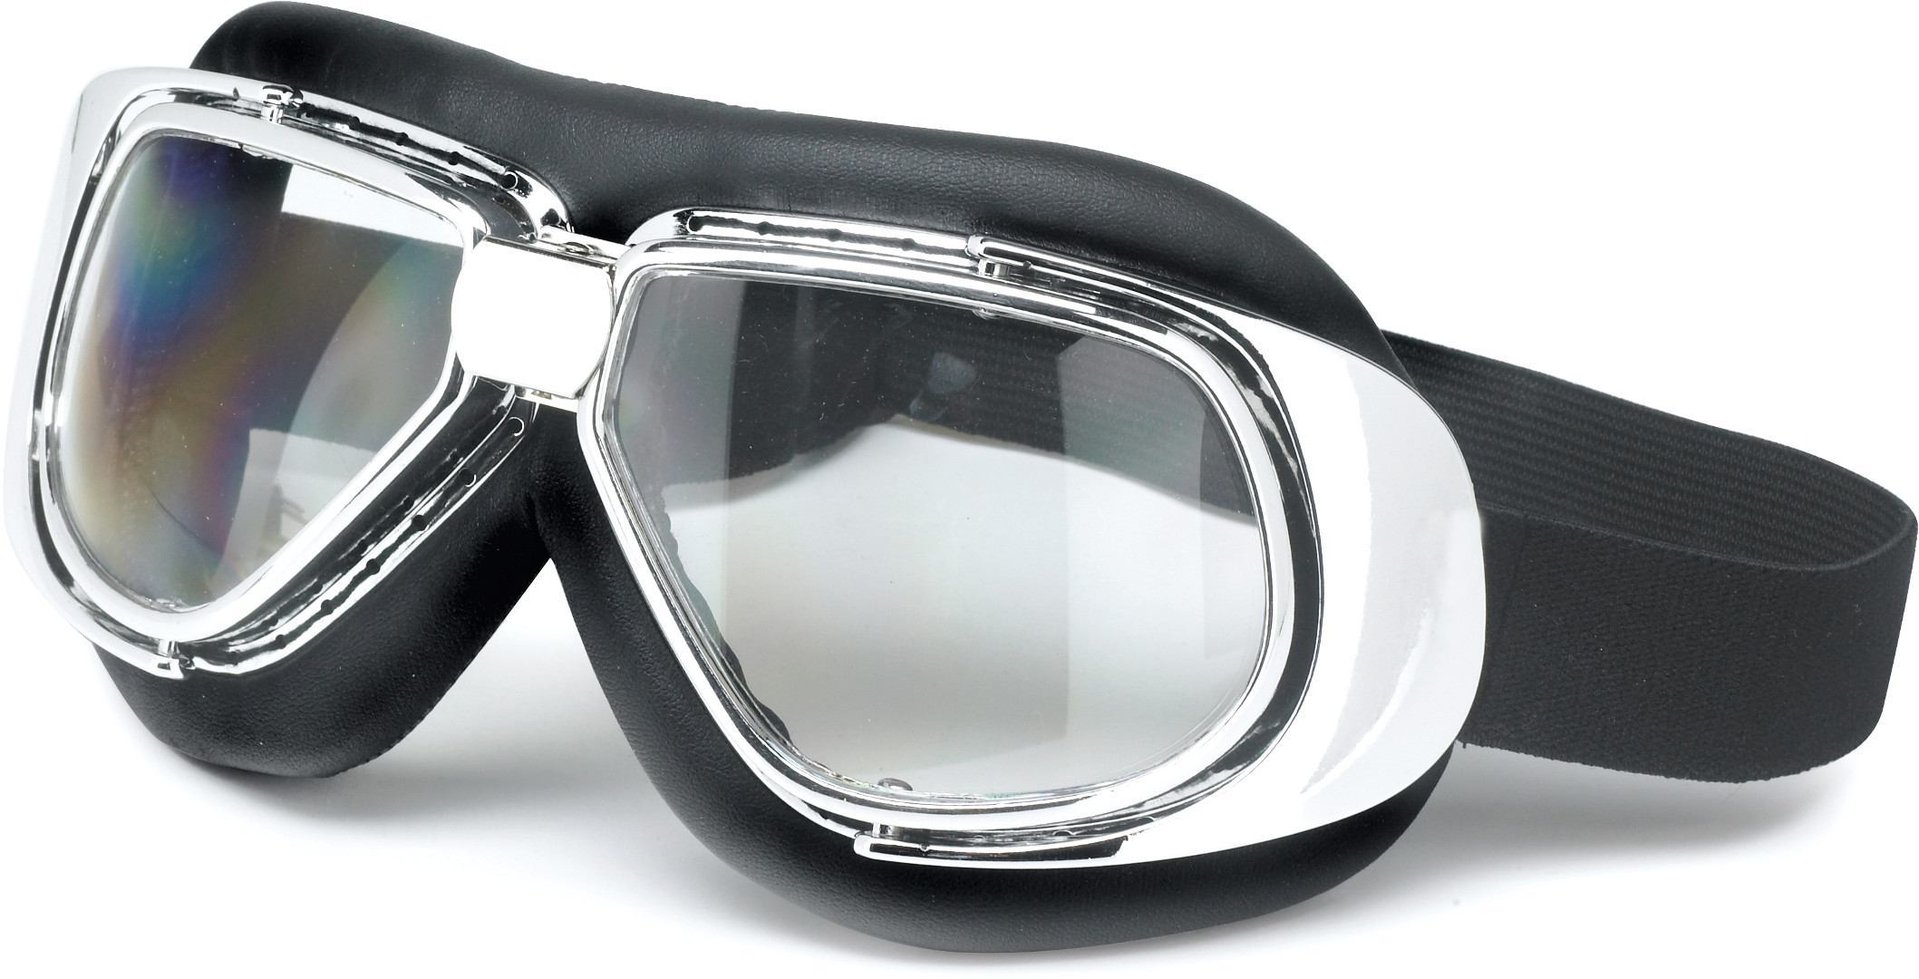 Очки Redbike Manx мотоциклетные велосипедные очки мотоциклетные гоночные очки мотоциклетные очки для мотокросса модель mx внедорожные велосипедные очки очки для велосп